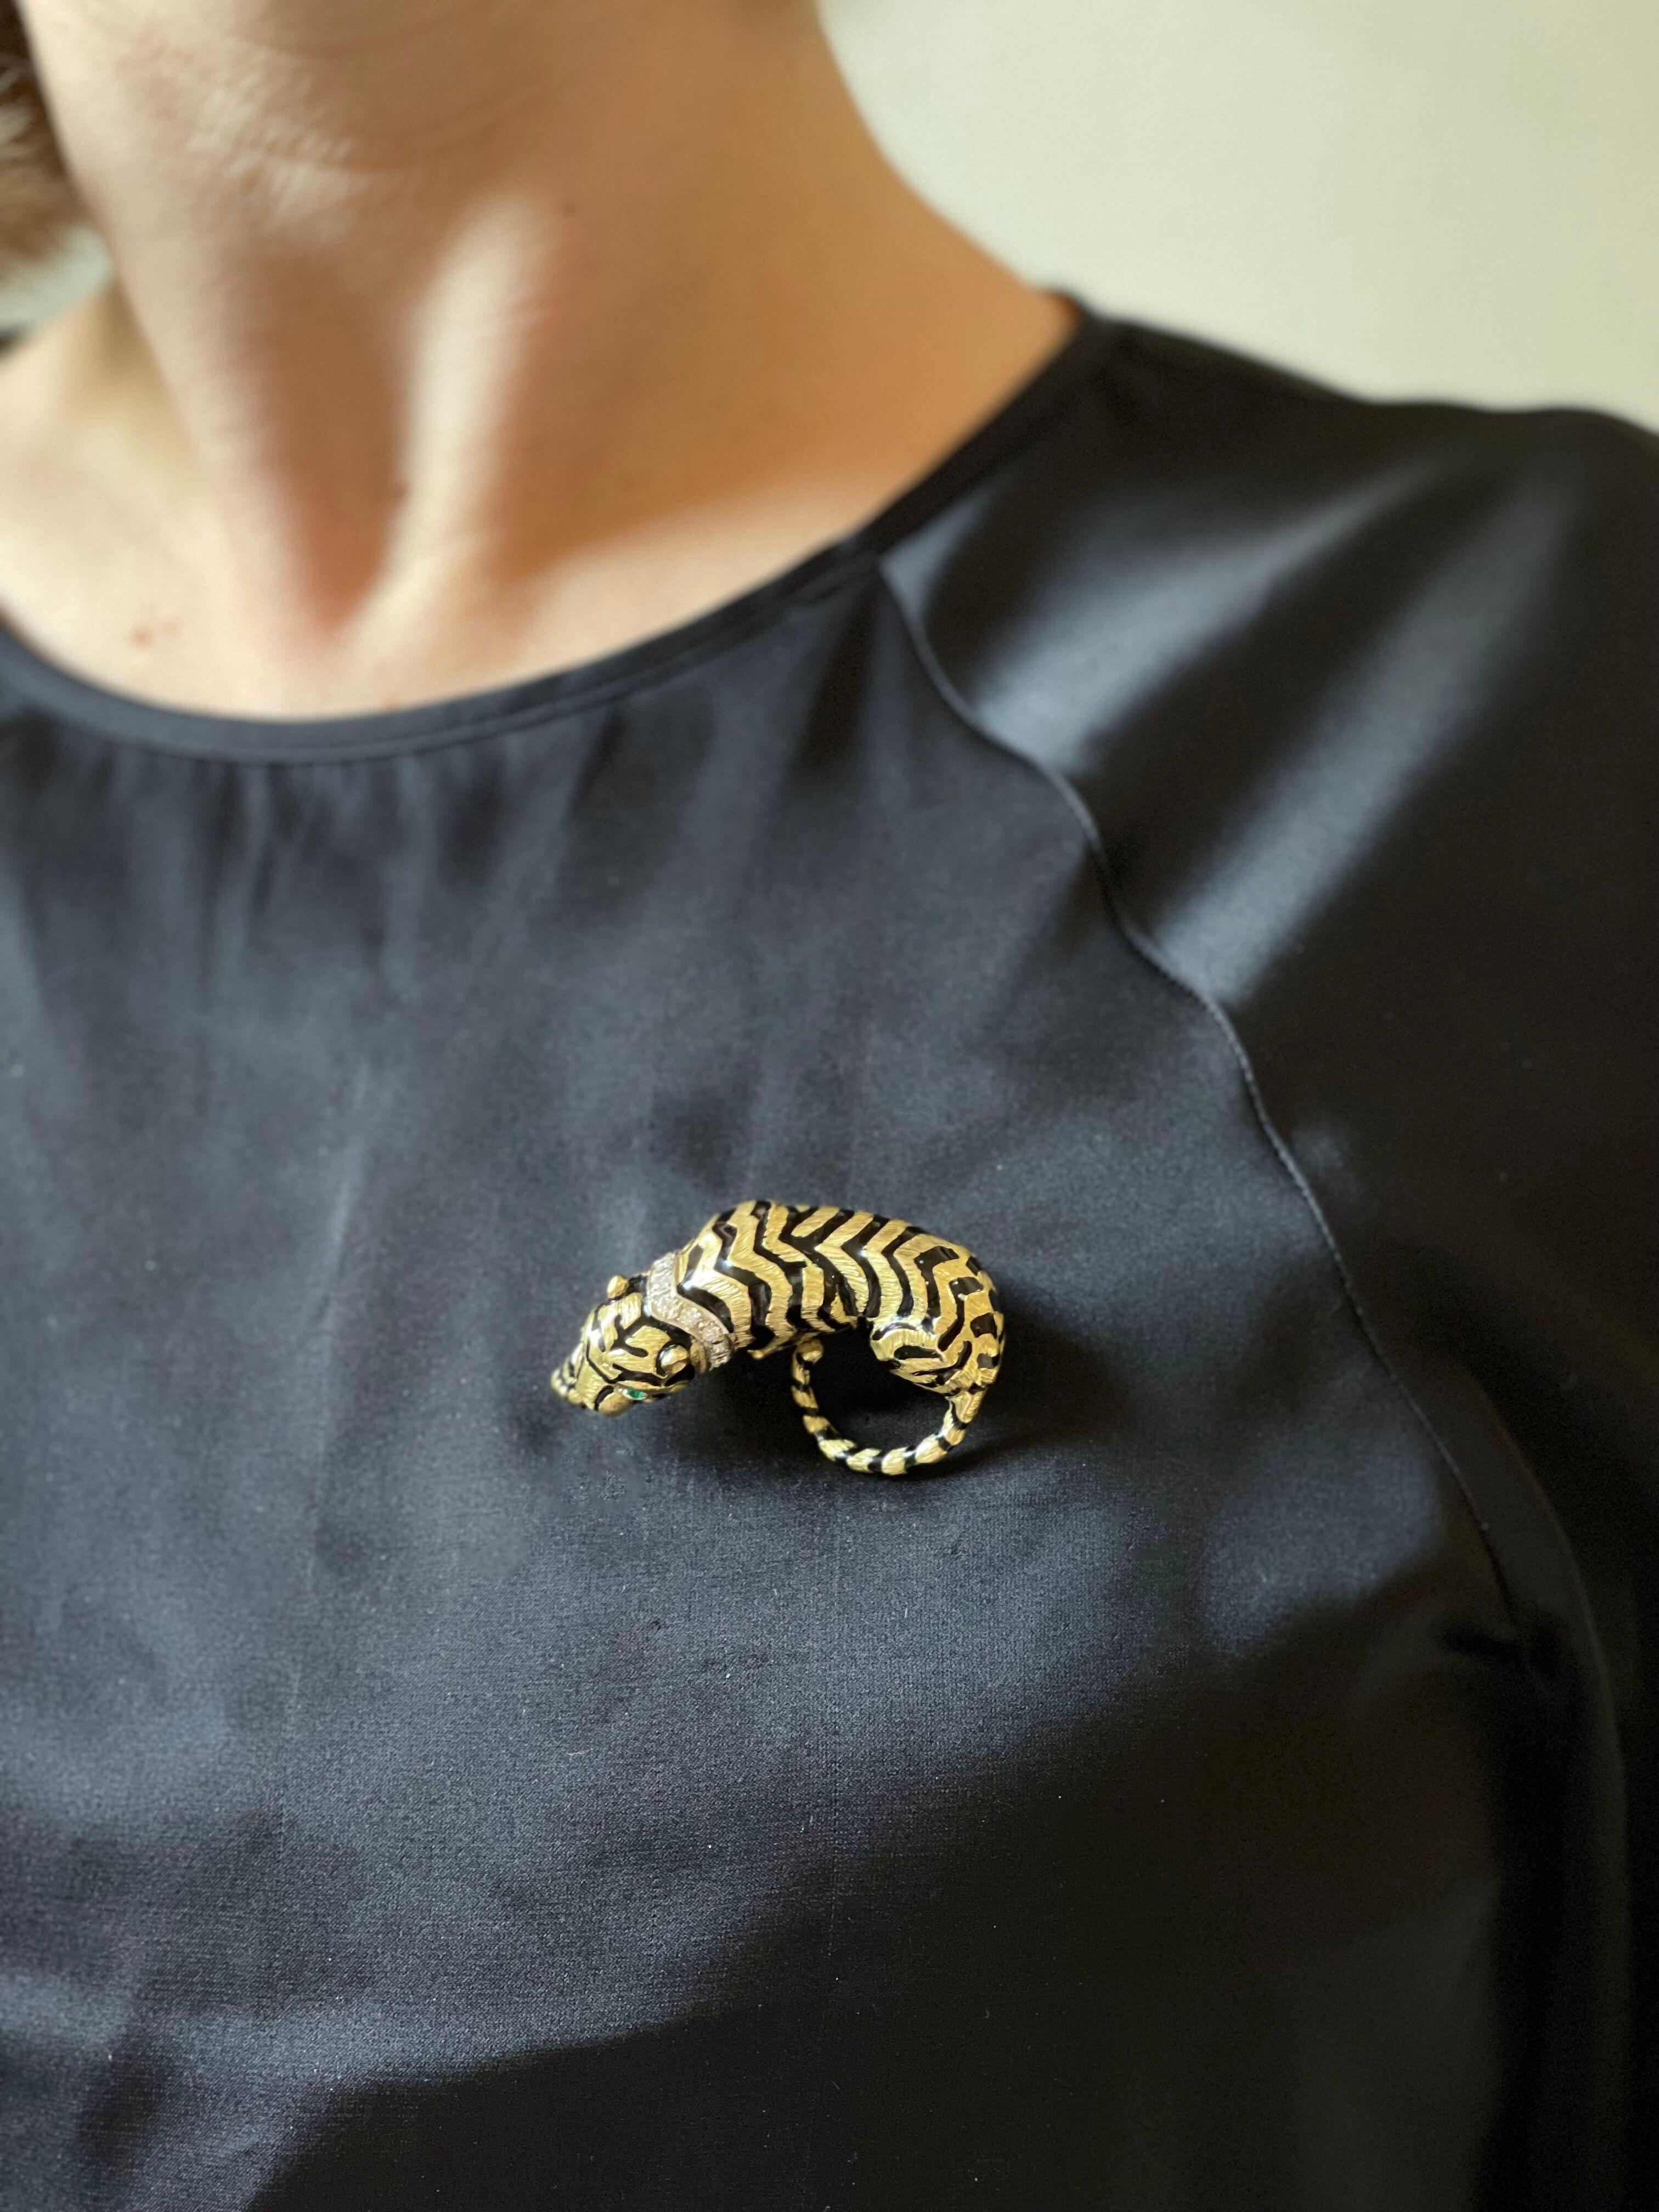 Brosche aus 18 Karat Gold und Emaille mit kauerndem Tiger, geschmückt mit Smaragdaugen und ca. 0,45ctw Diamanten am Halsband. Die Brosche misst 2 1/8